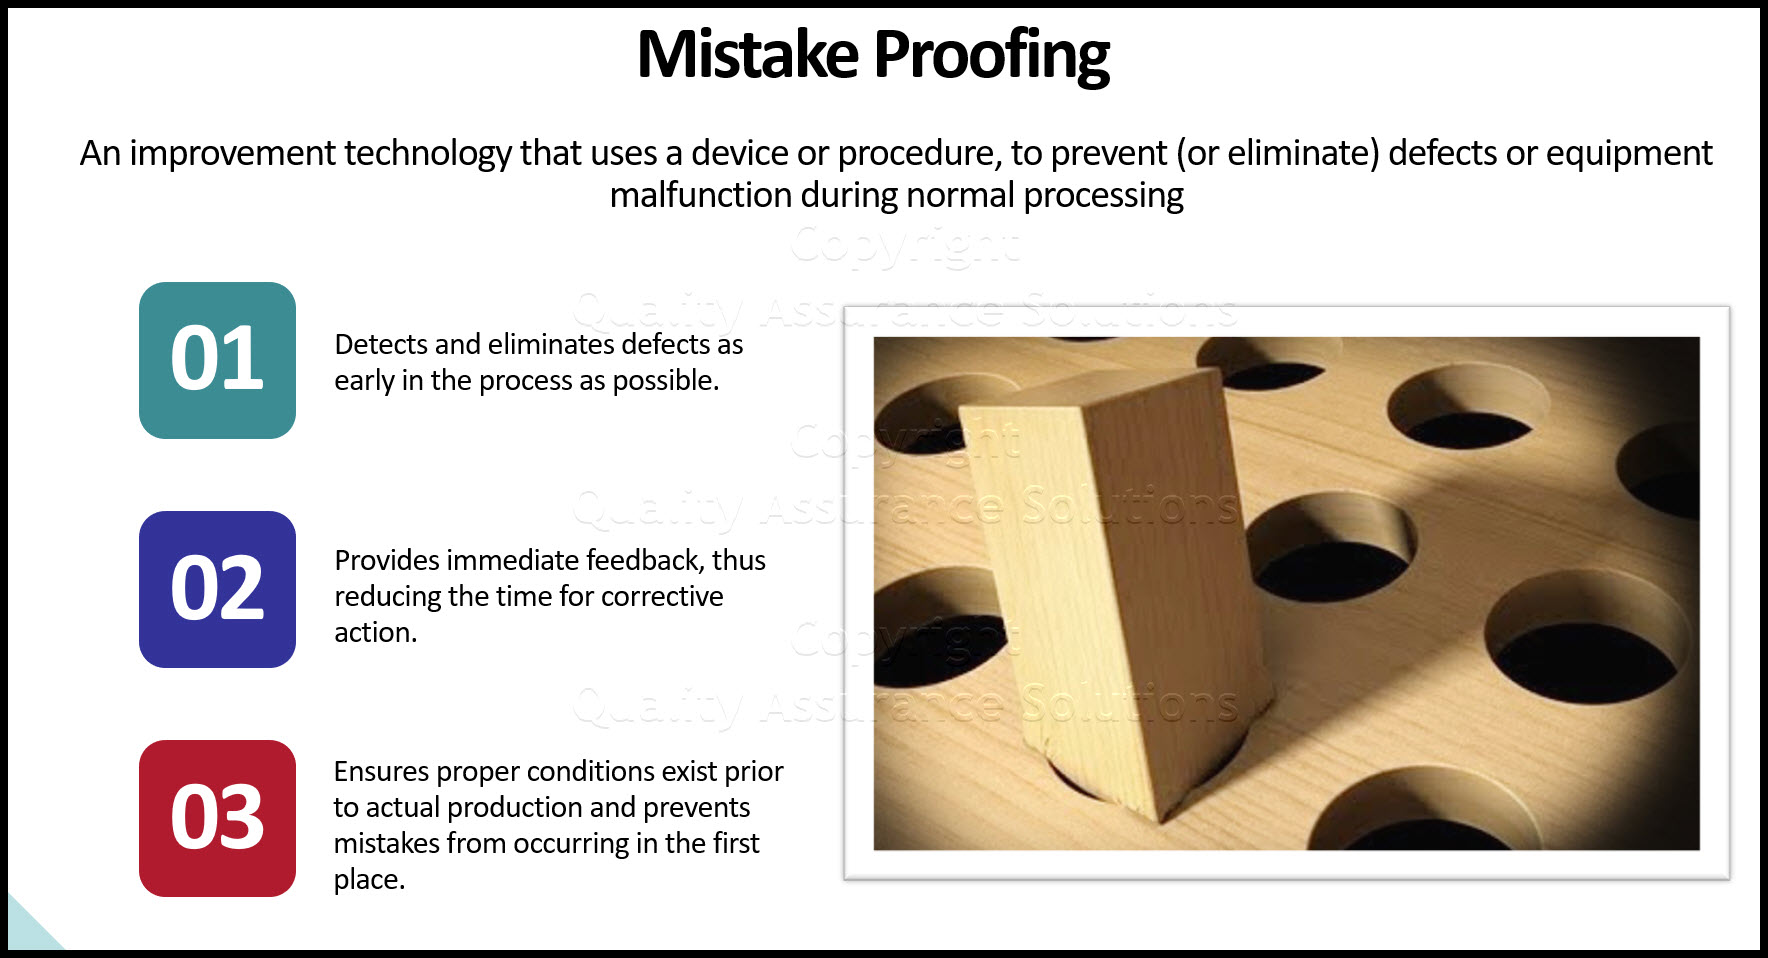 اثبات اشتباه به عنوان یک فناوری بهبود تعریف می شود که از یک دستگاه یا روش استفاده می کند